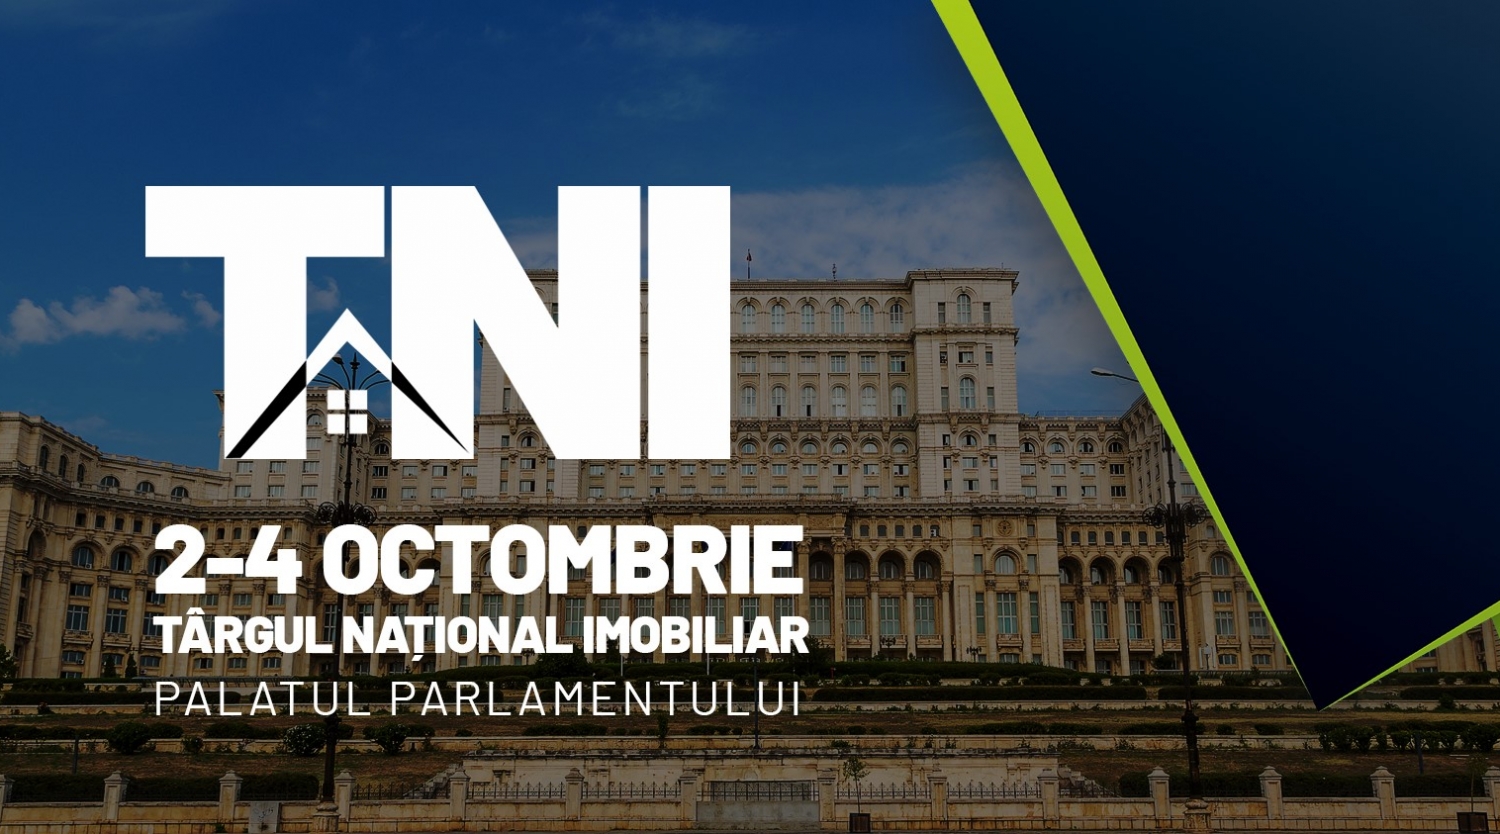 TNI 2-4 Octombrie 2020 București